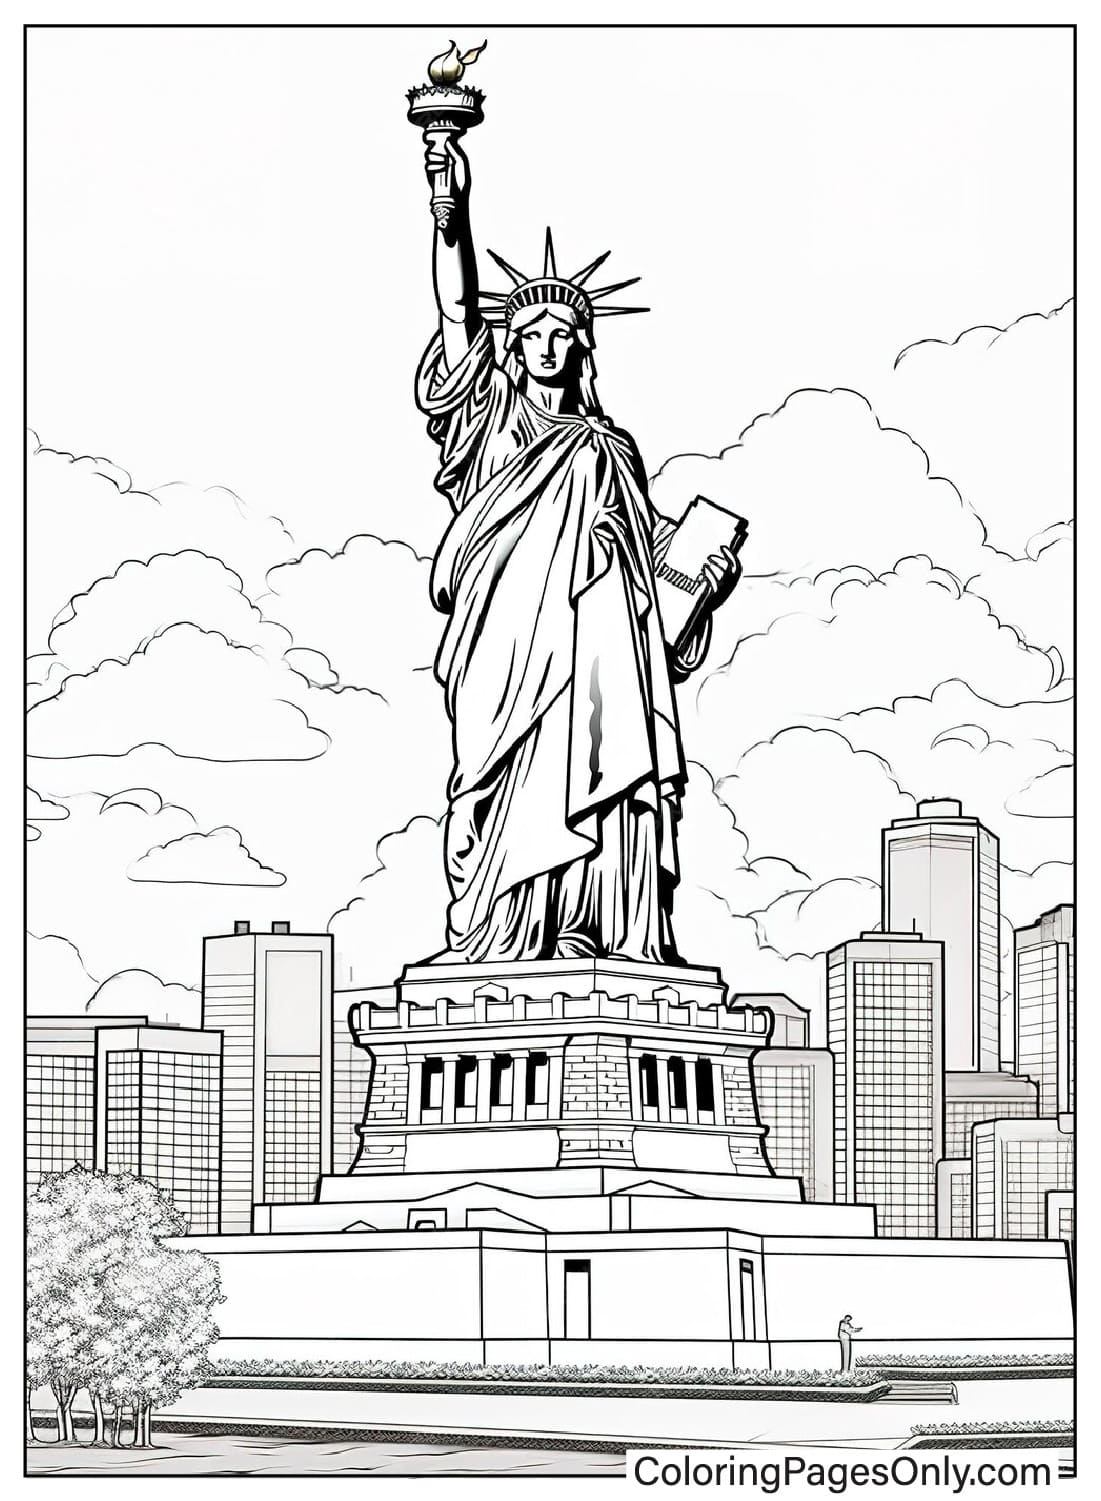 Pagina da colorare realistica della Statua della Libertà dalla Statua della Libertà